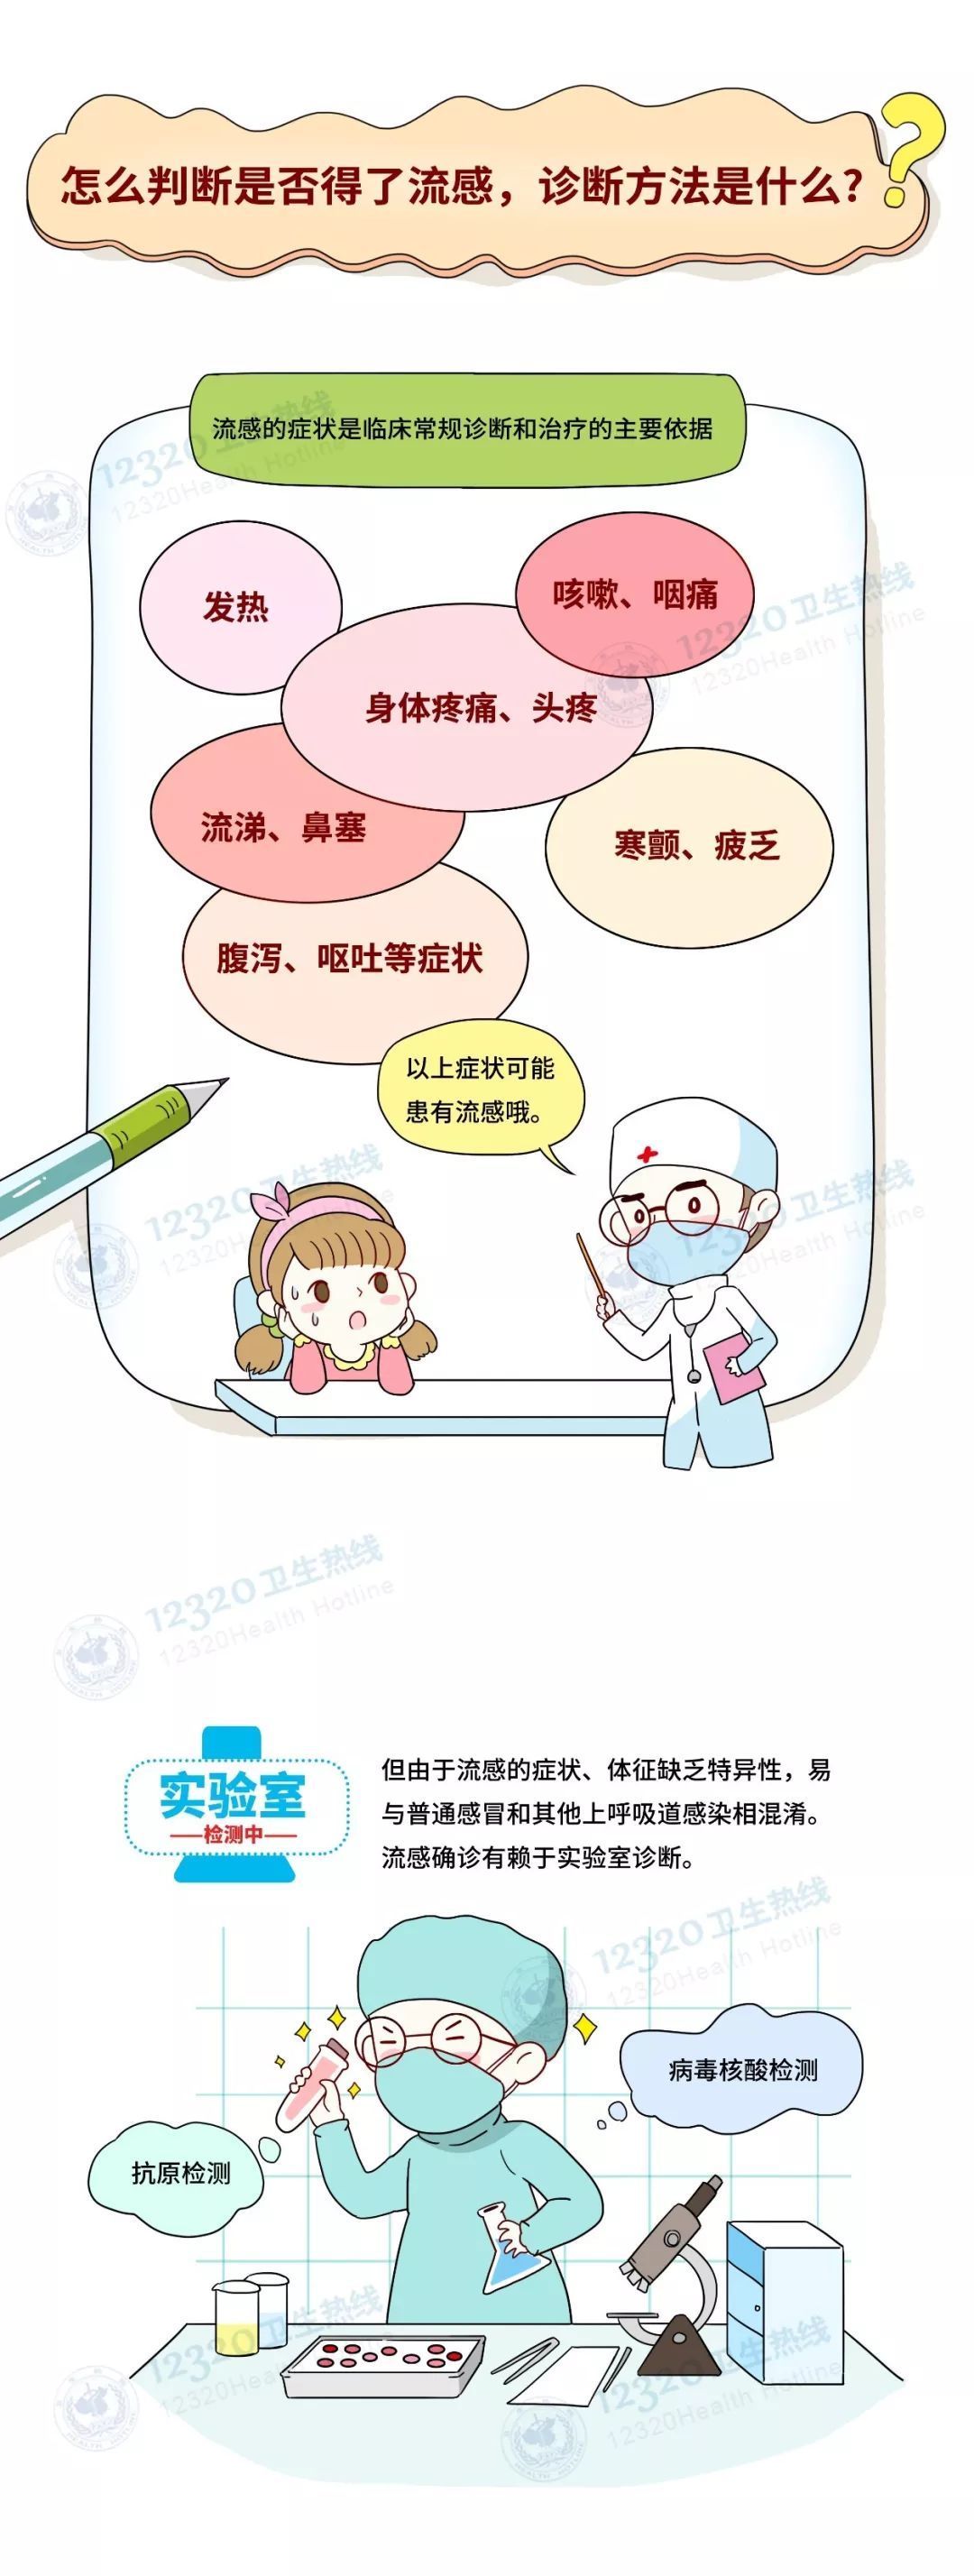 【大荔中医】2019流感预防知识宣传 如何预防